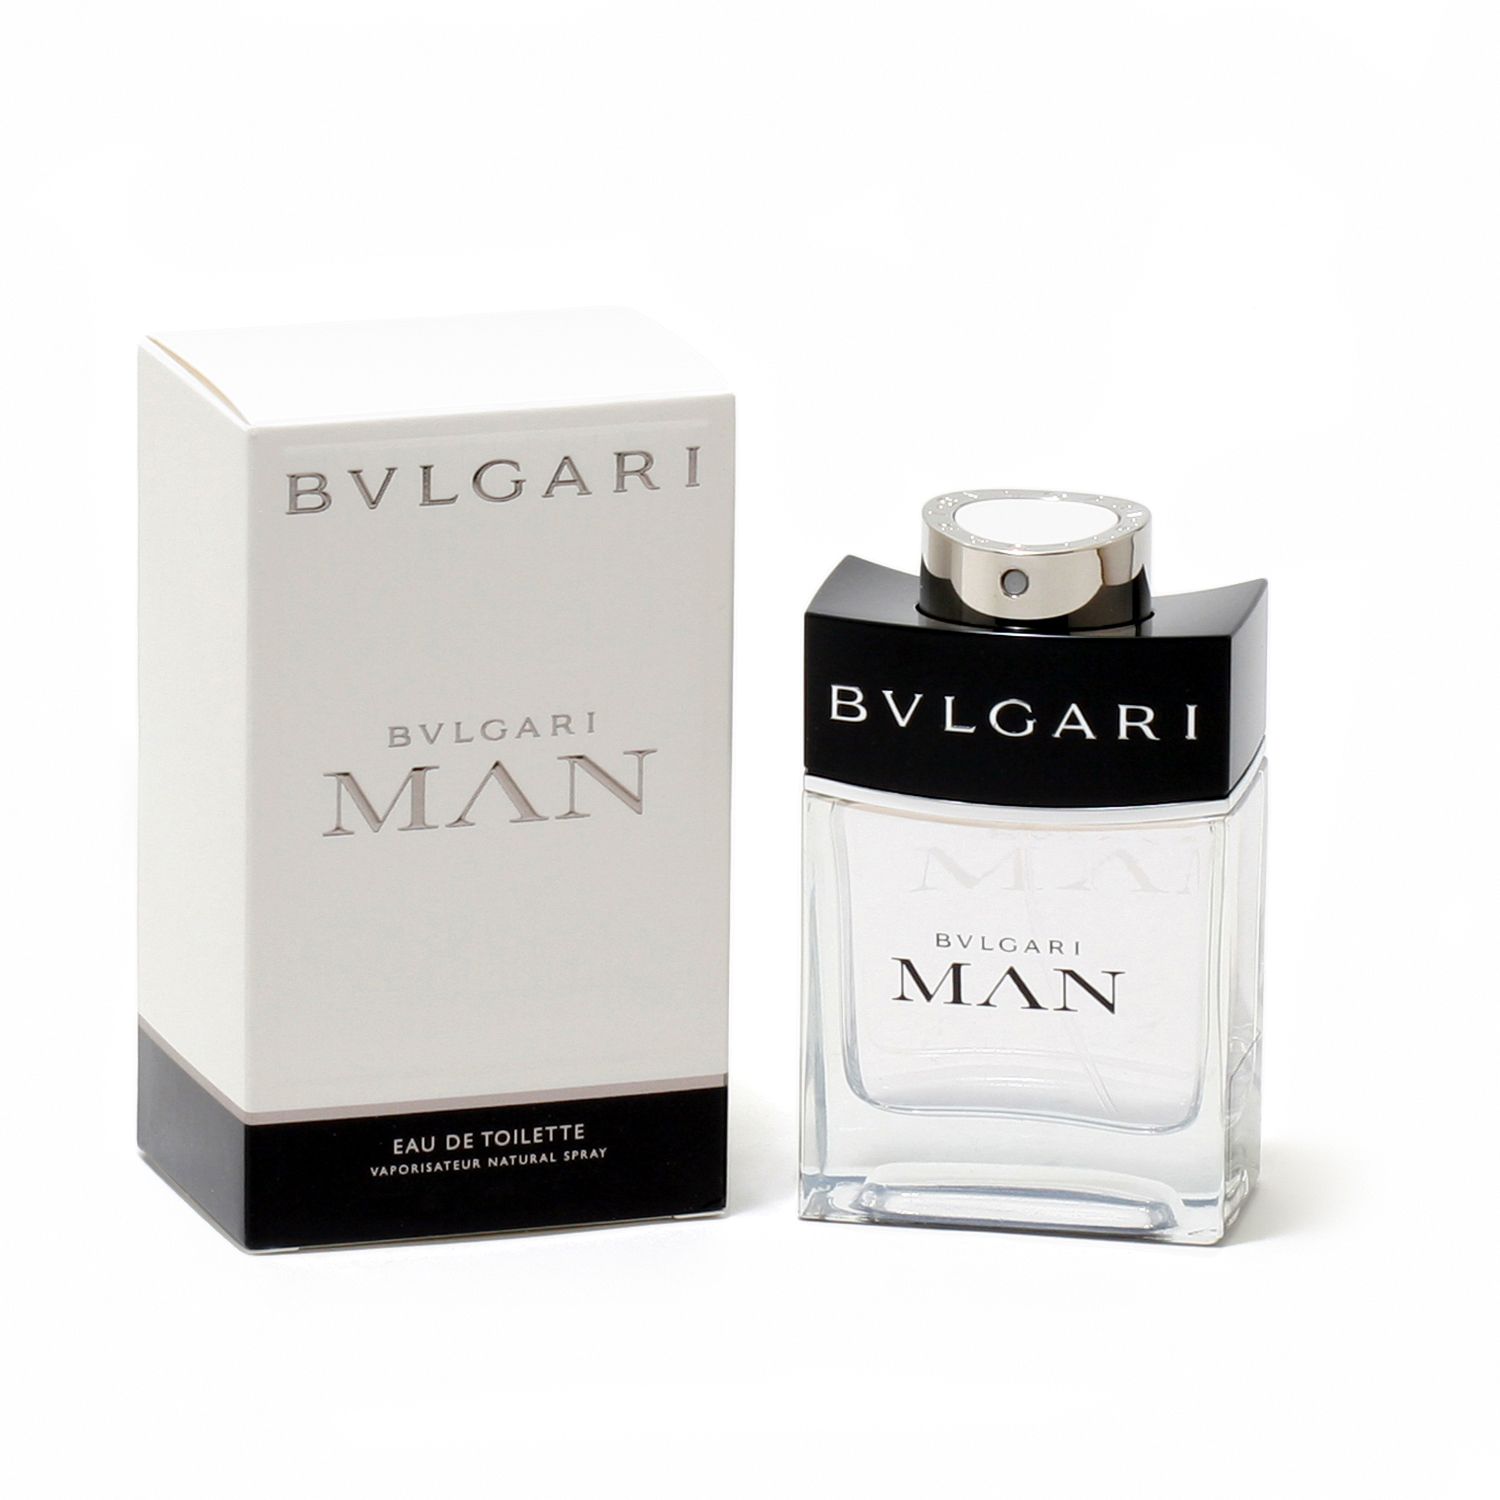 bvlgari parfum man